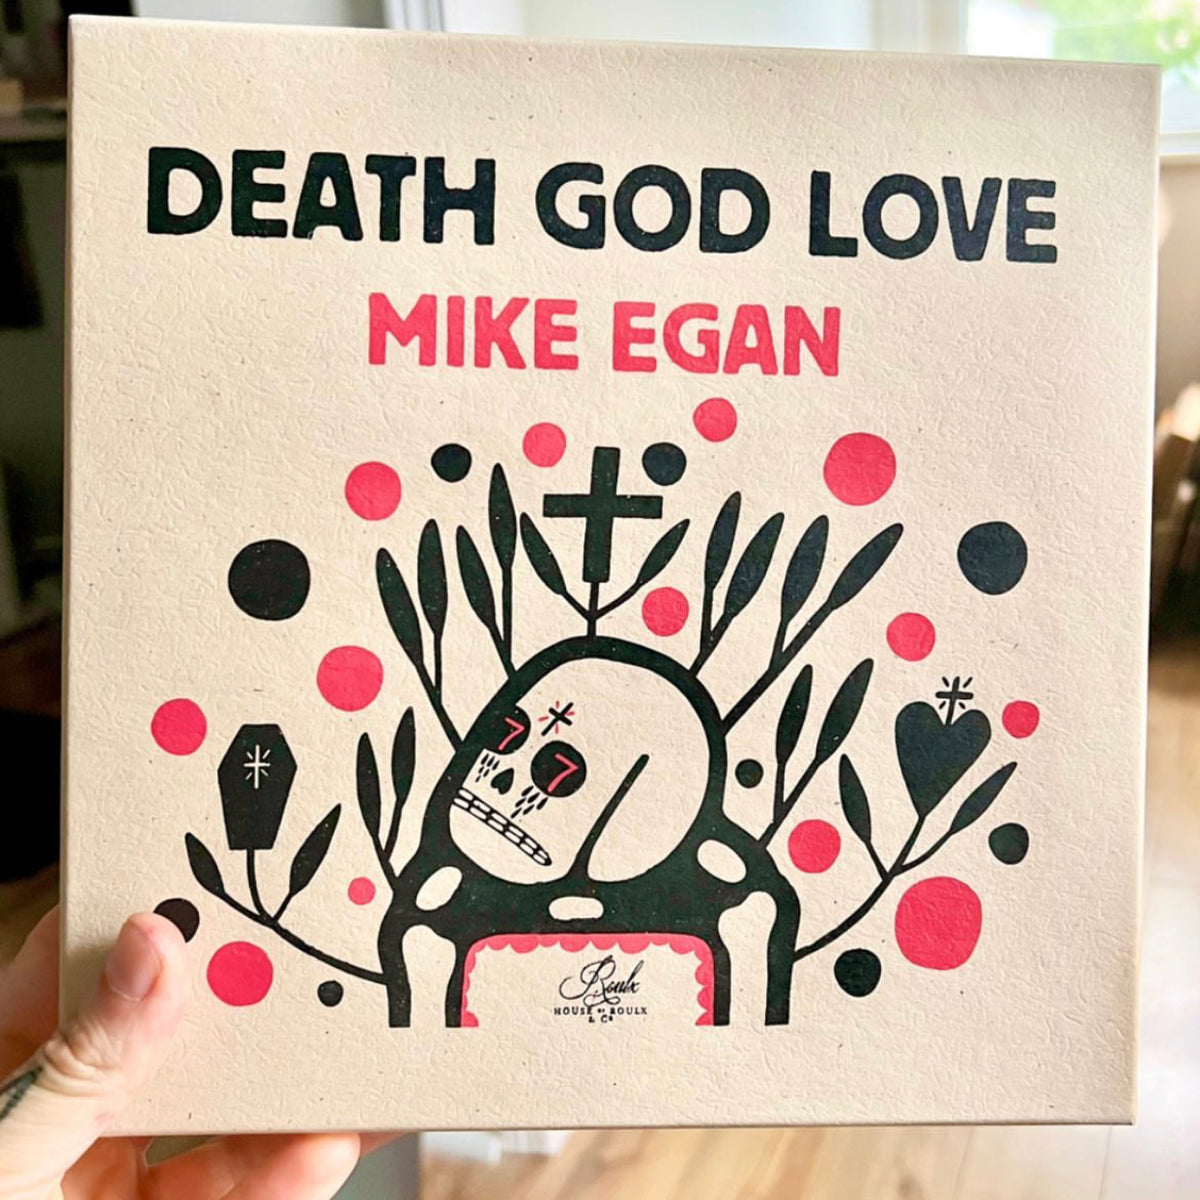 Mike Egan &quot;DEATH GOD LOVE&quot; - Limited Edition Box Set